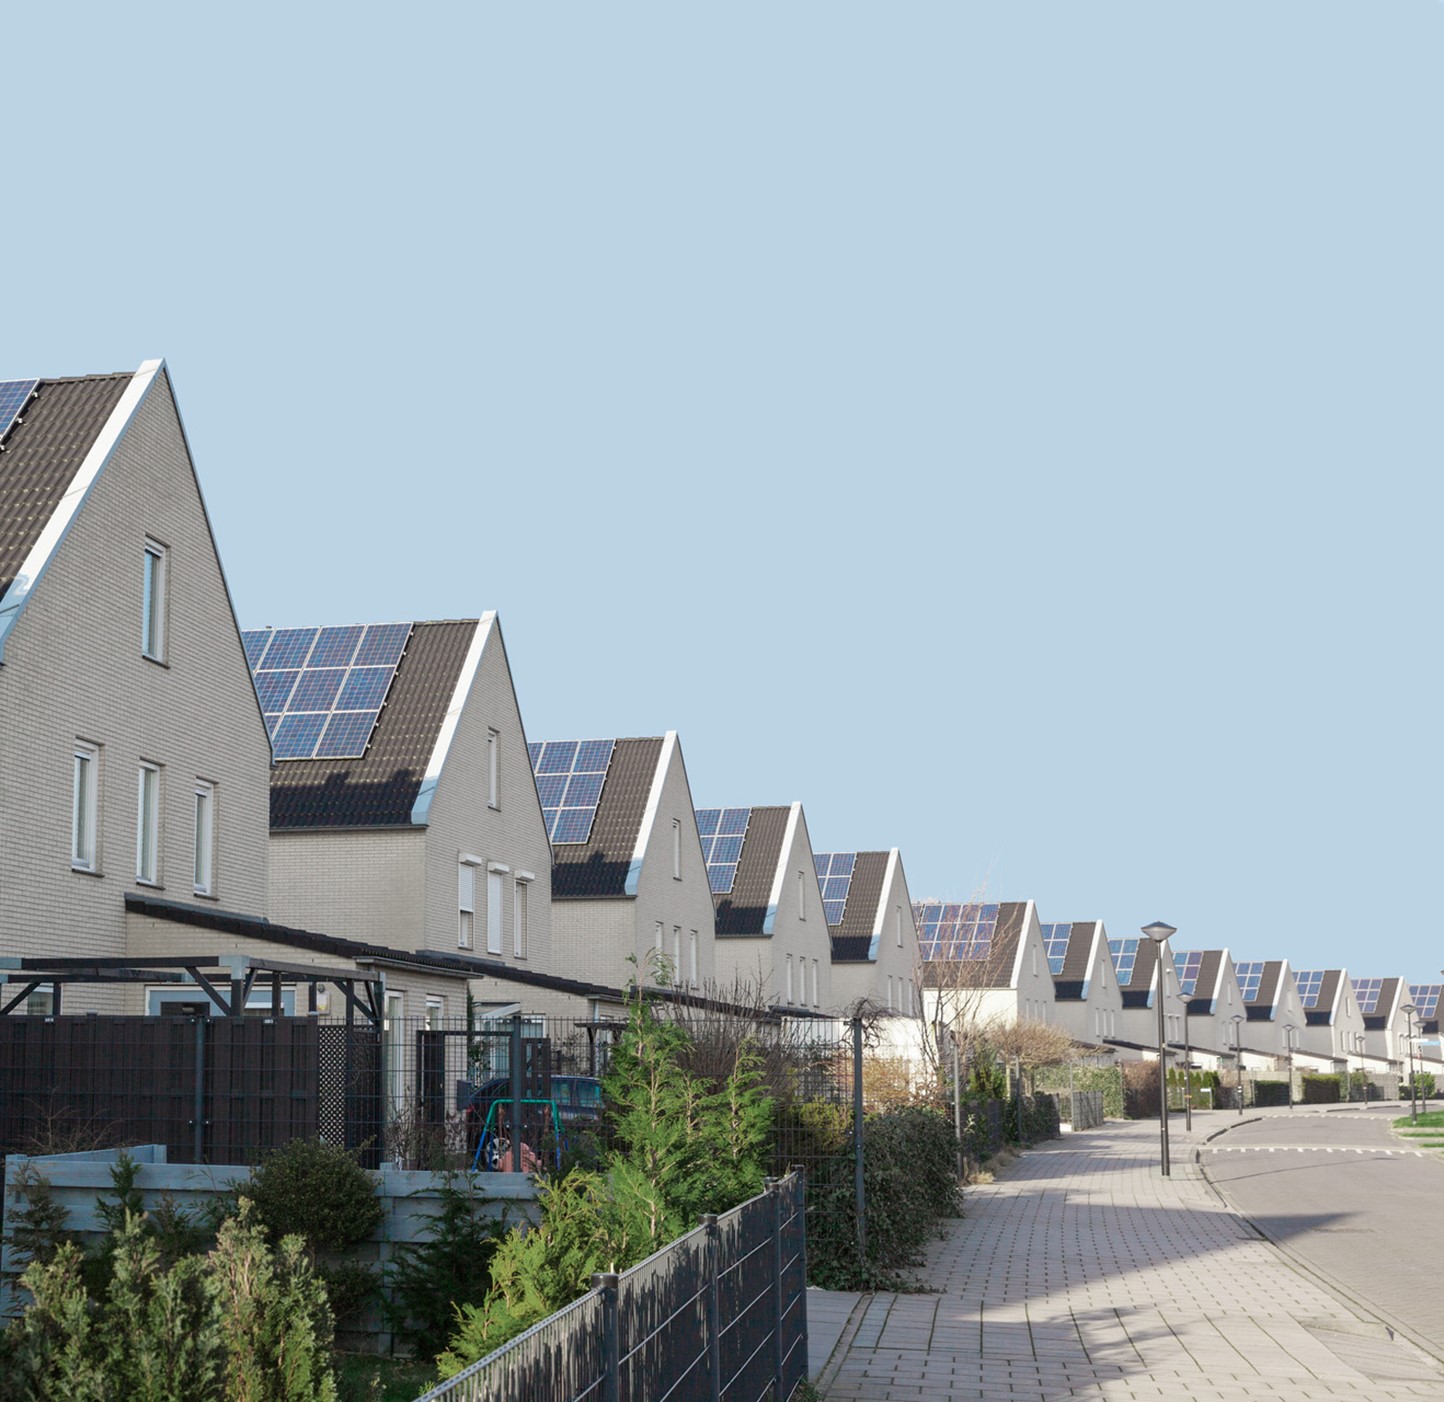 Woningen met zonnepanelen op het dak